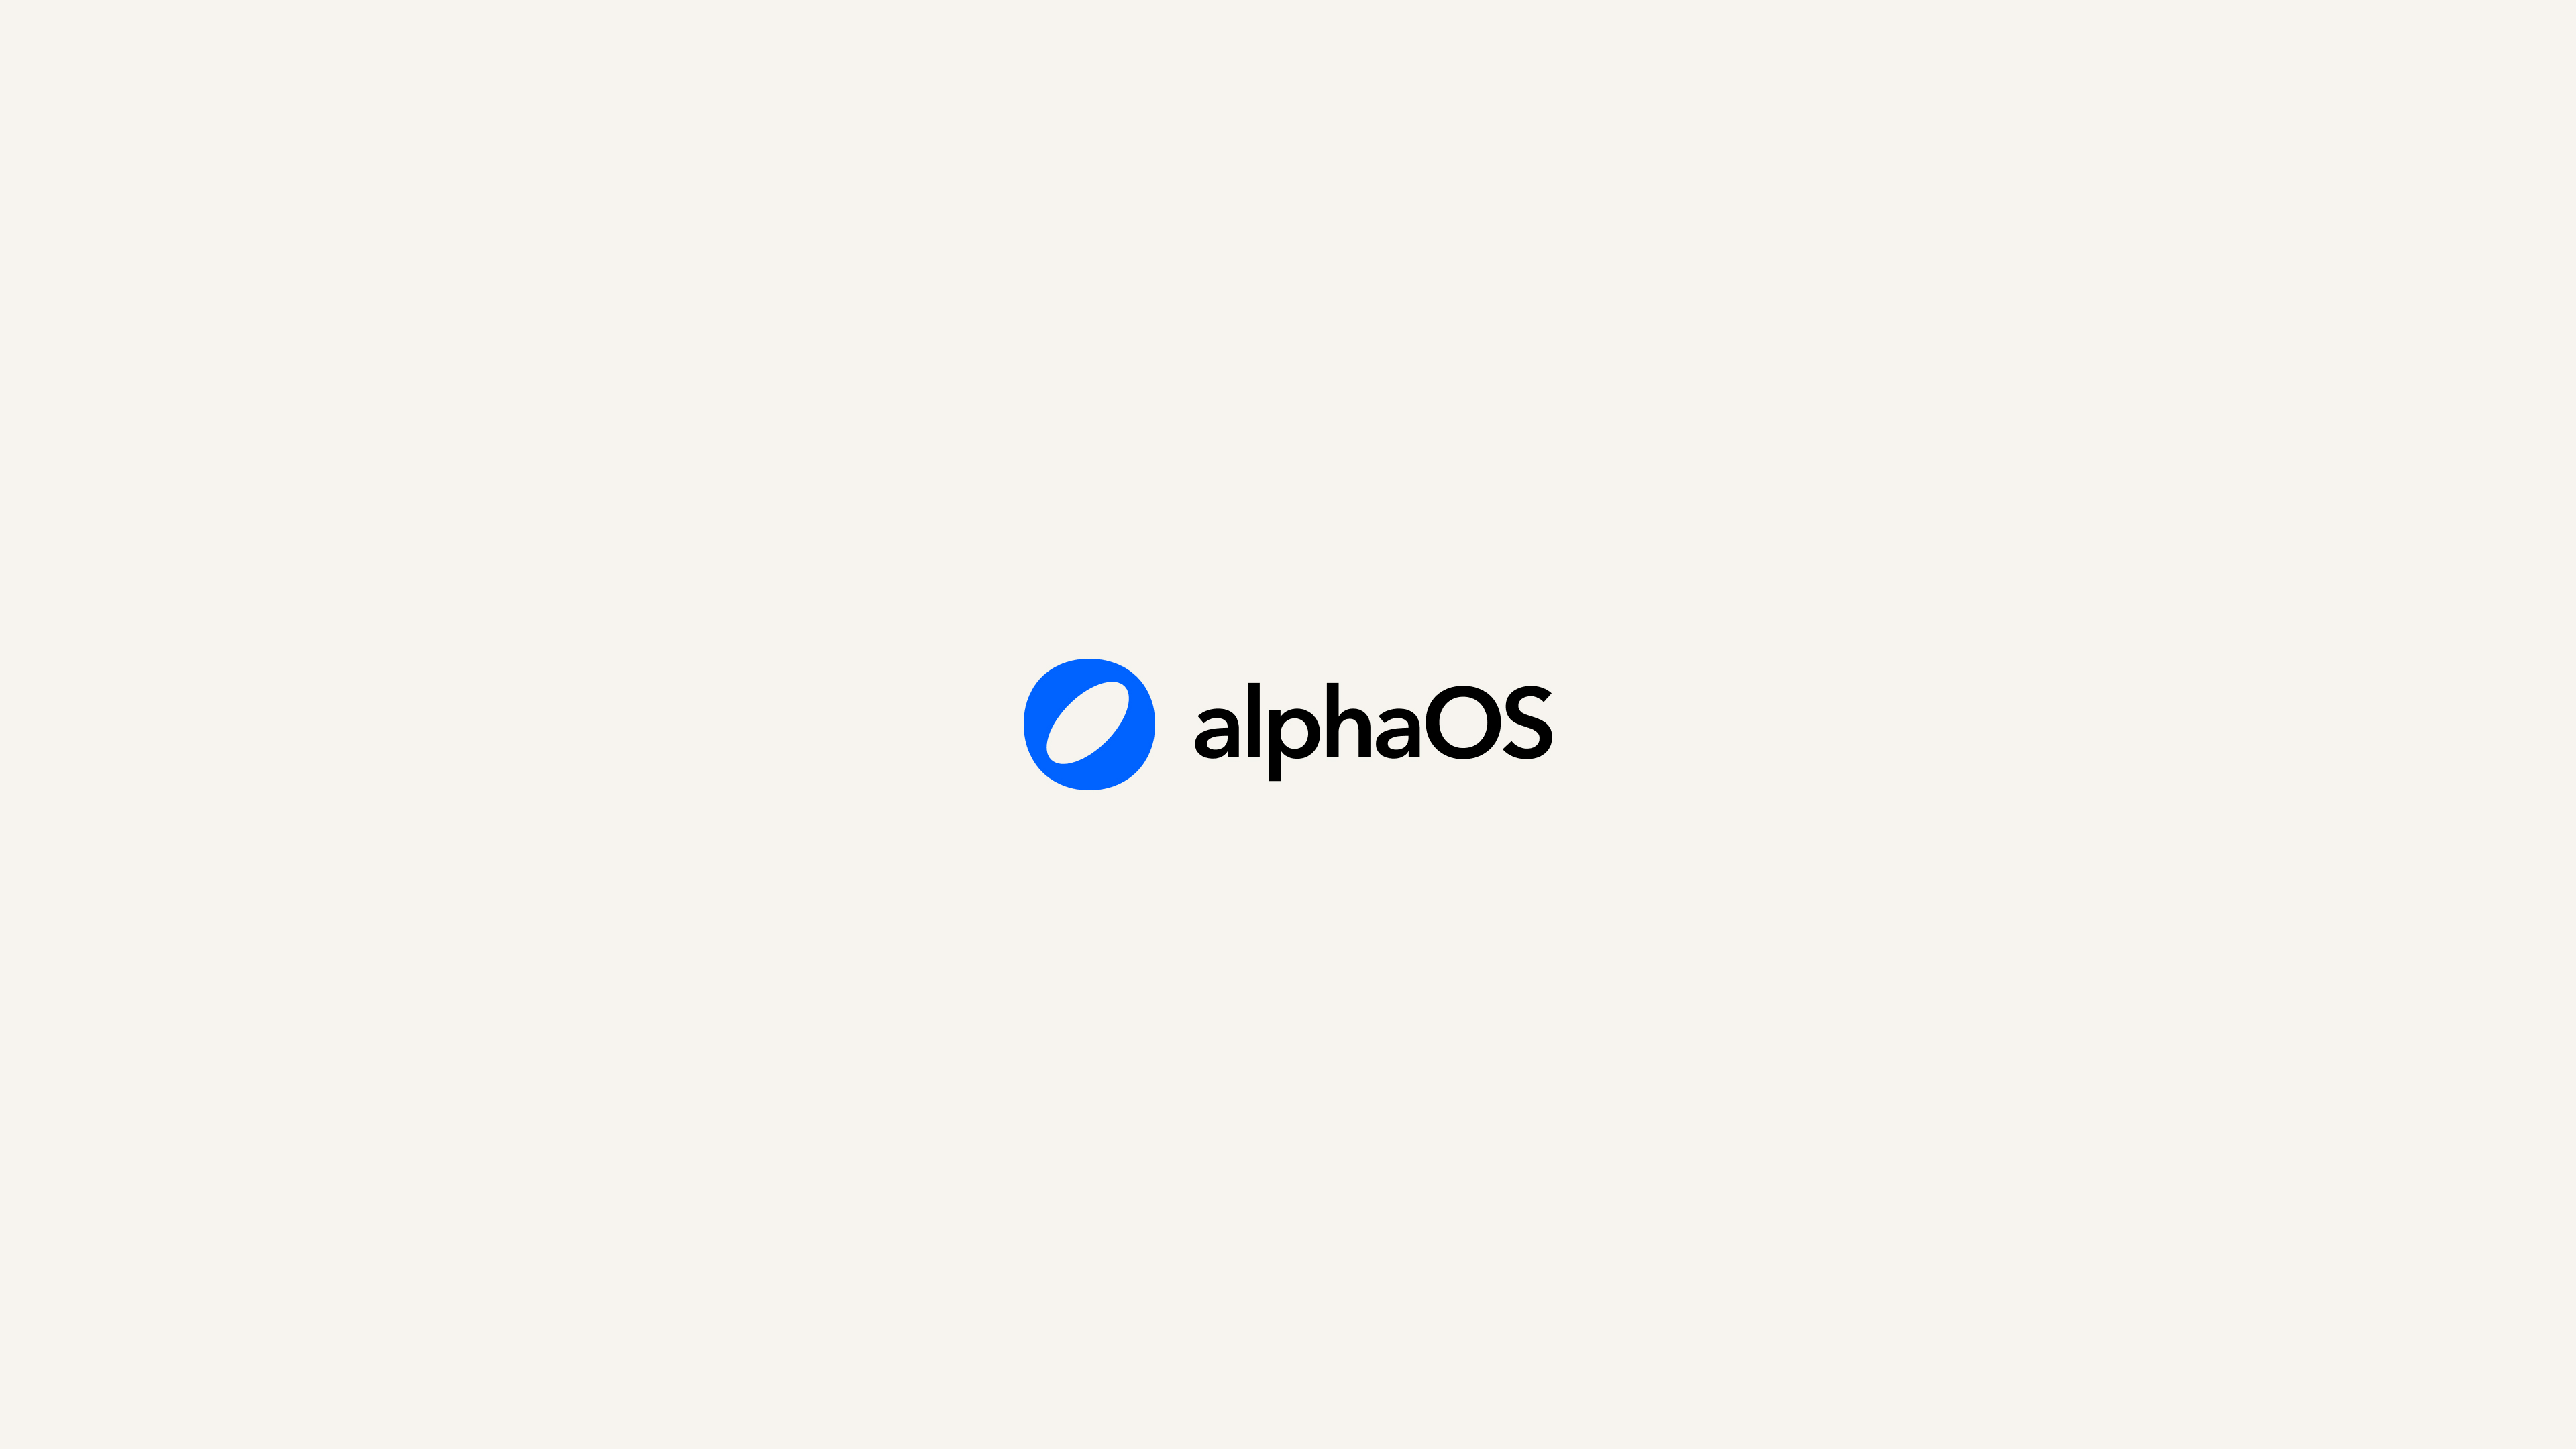 Introducing alphaOS